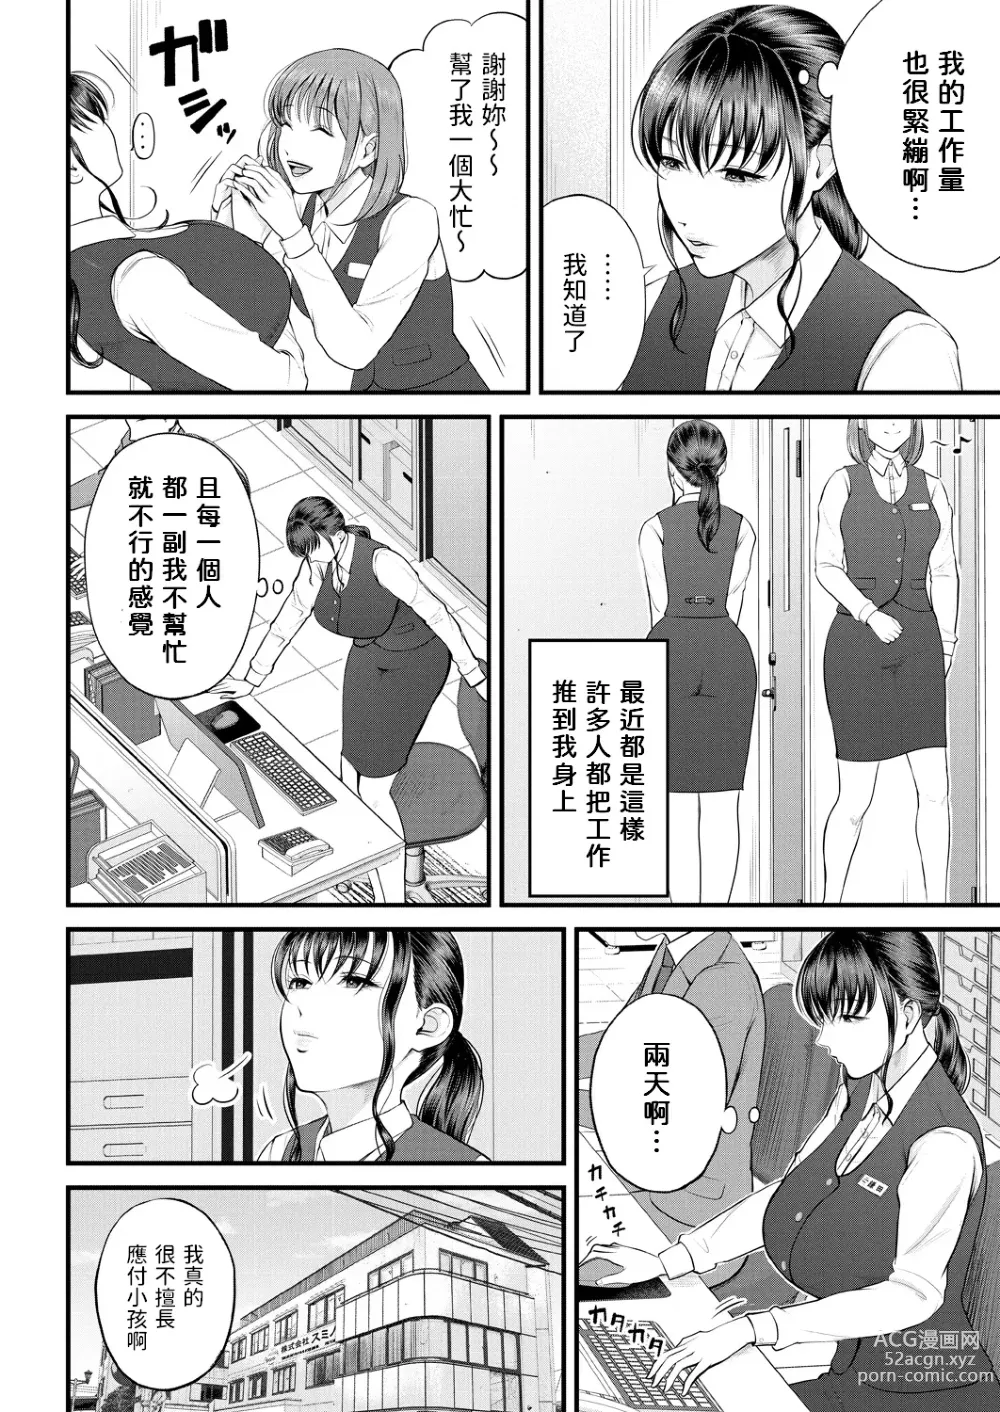 Page 2 of manga Naisho no Shokuba Taiken